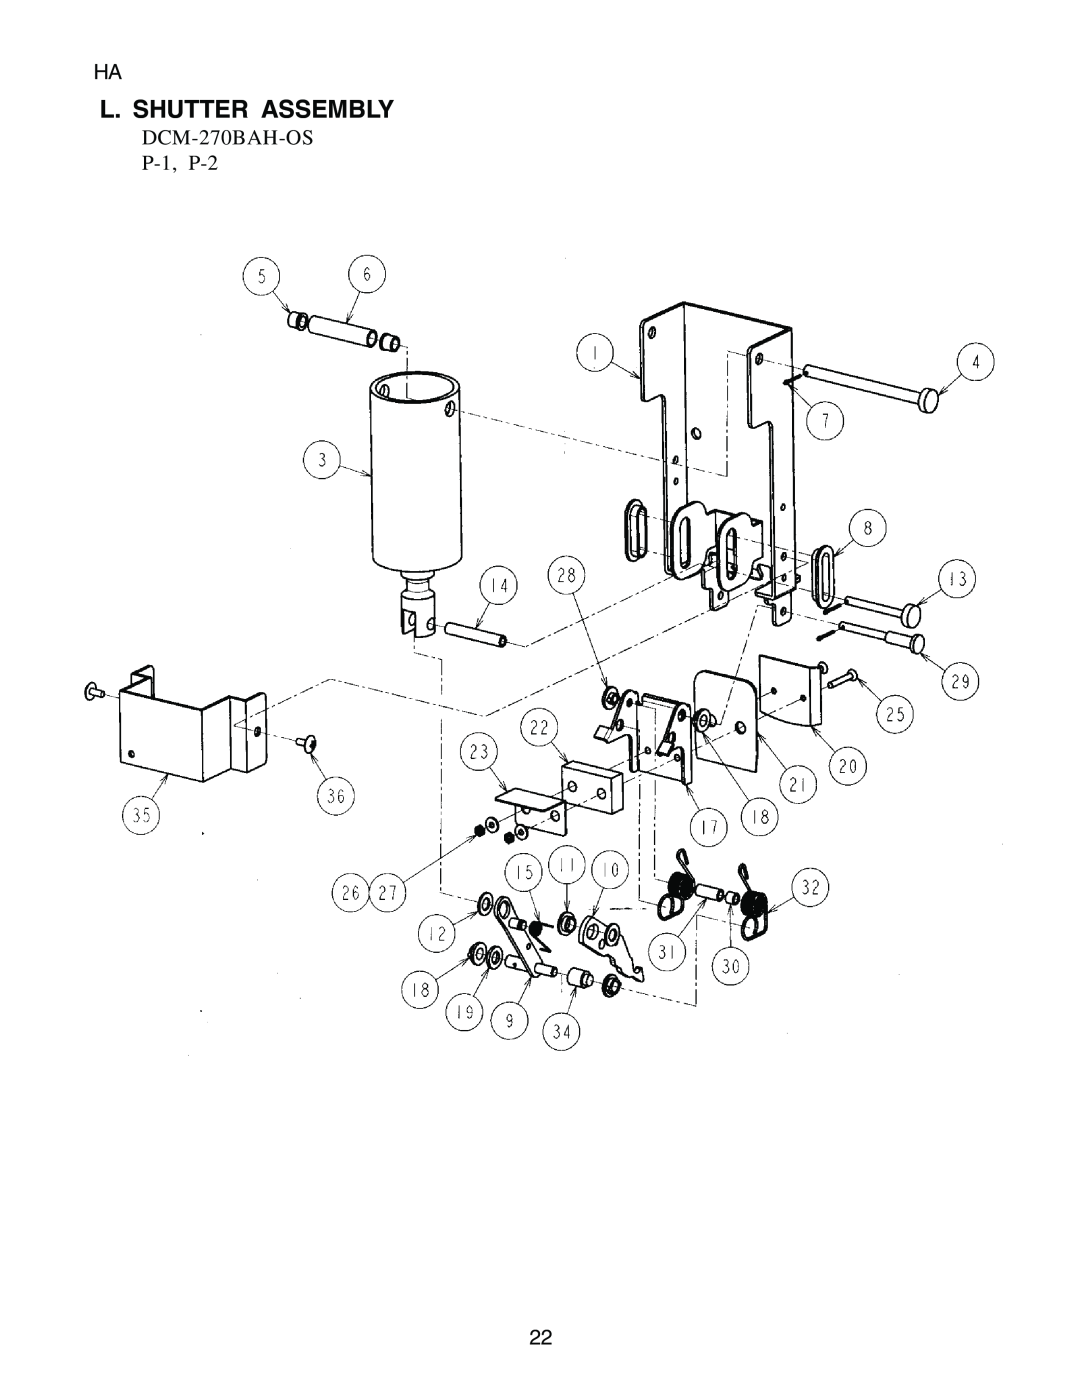 Hoshizaki manual L. Shutter Assembly, DCM-270BAH-OS P-1, P-2 